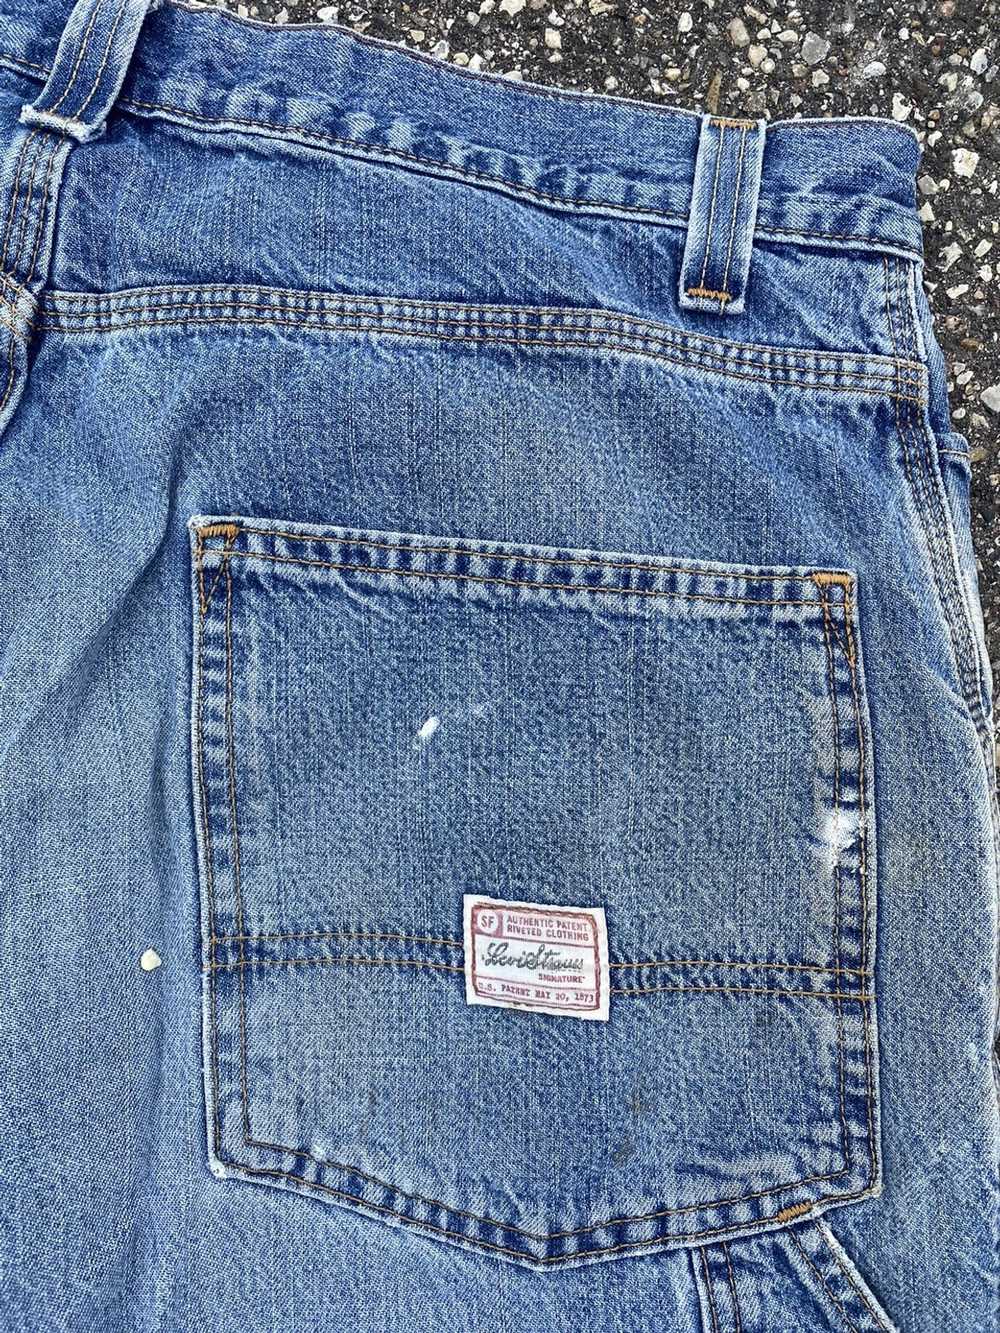 Levi's × Vintage Vintage Levi’s Carpenter Jeans - image 4